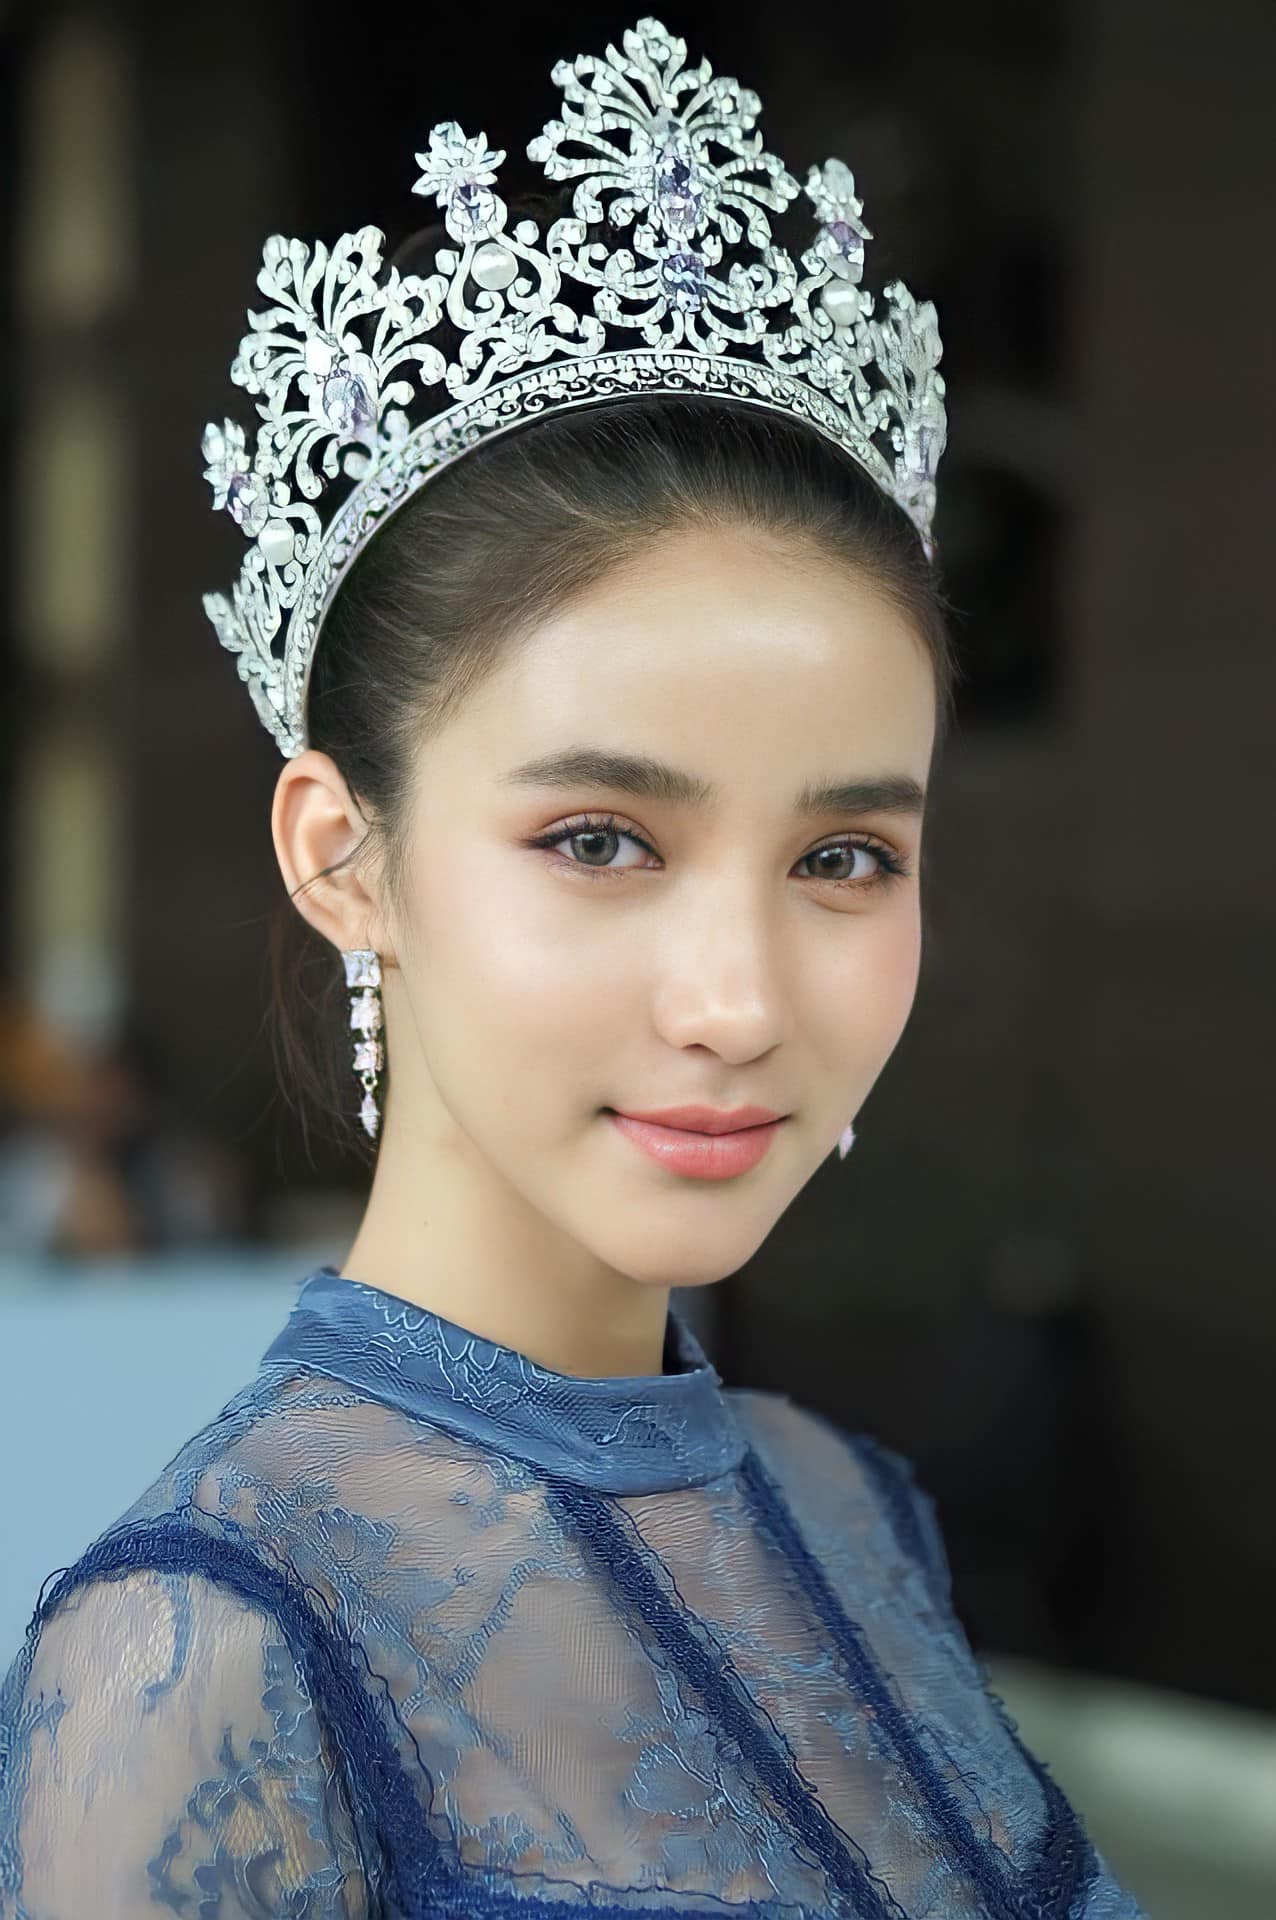 Hoa hậu chuyển giới hot nhất nhì Thái Lan -  Yoshi Rinrada đầu quân cho công ty của Hương Giang - ảnh 4